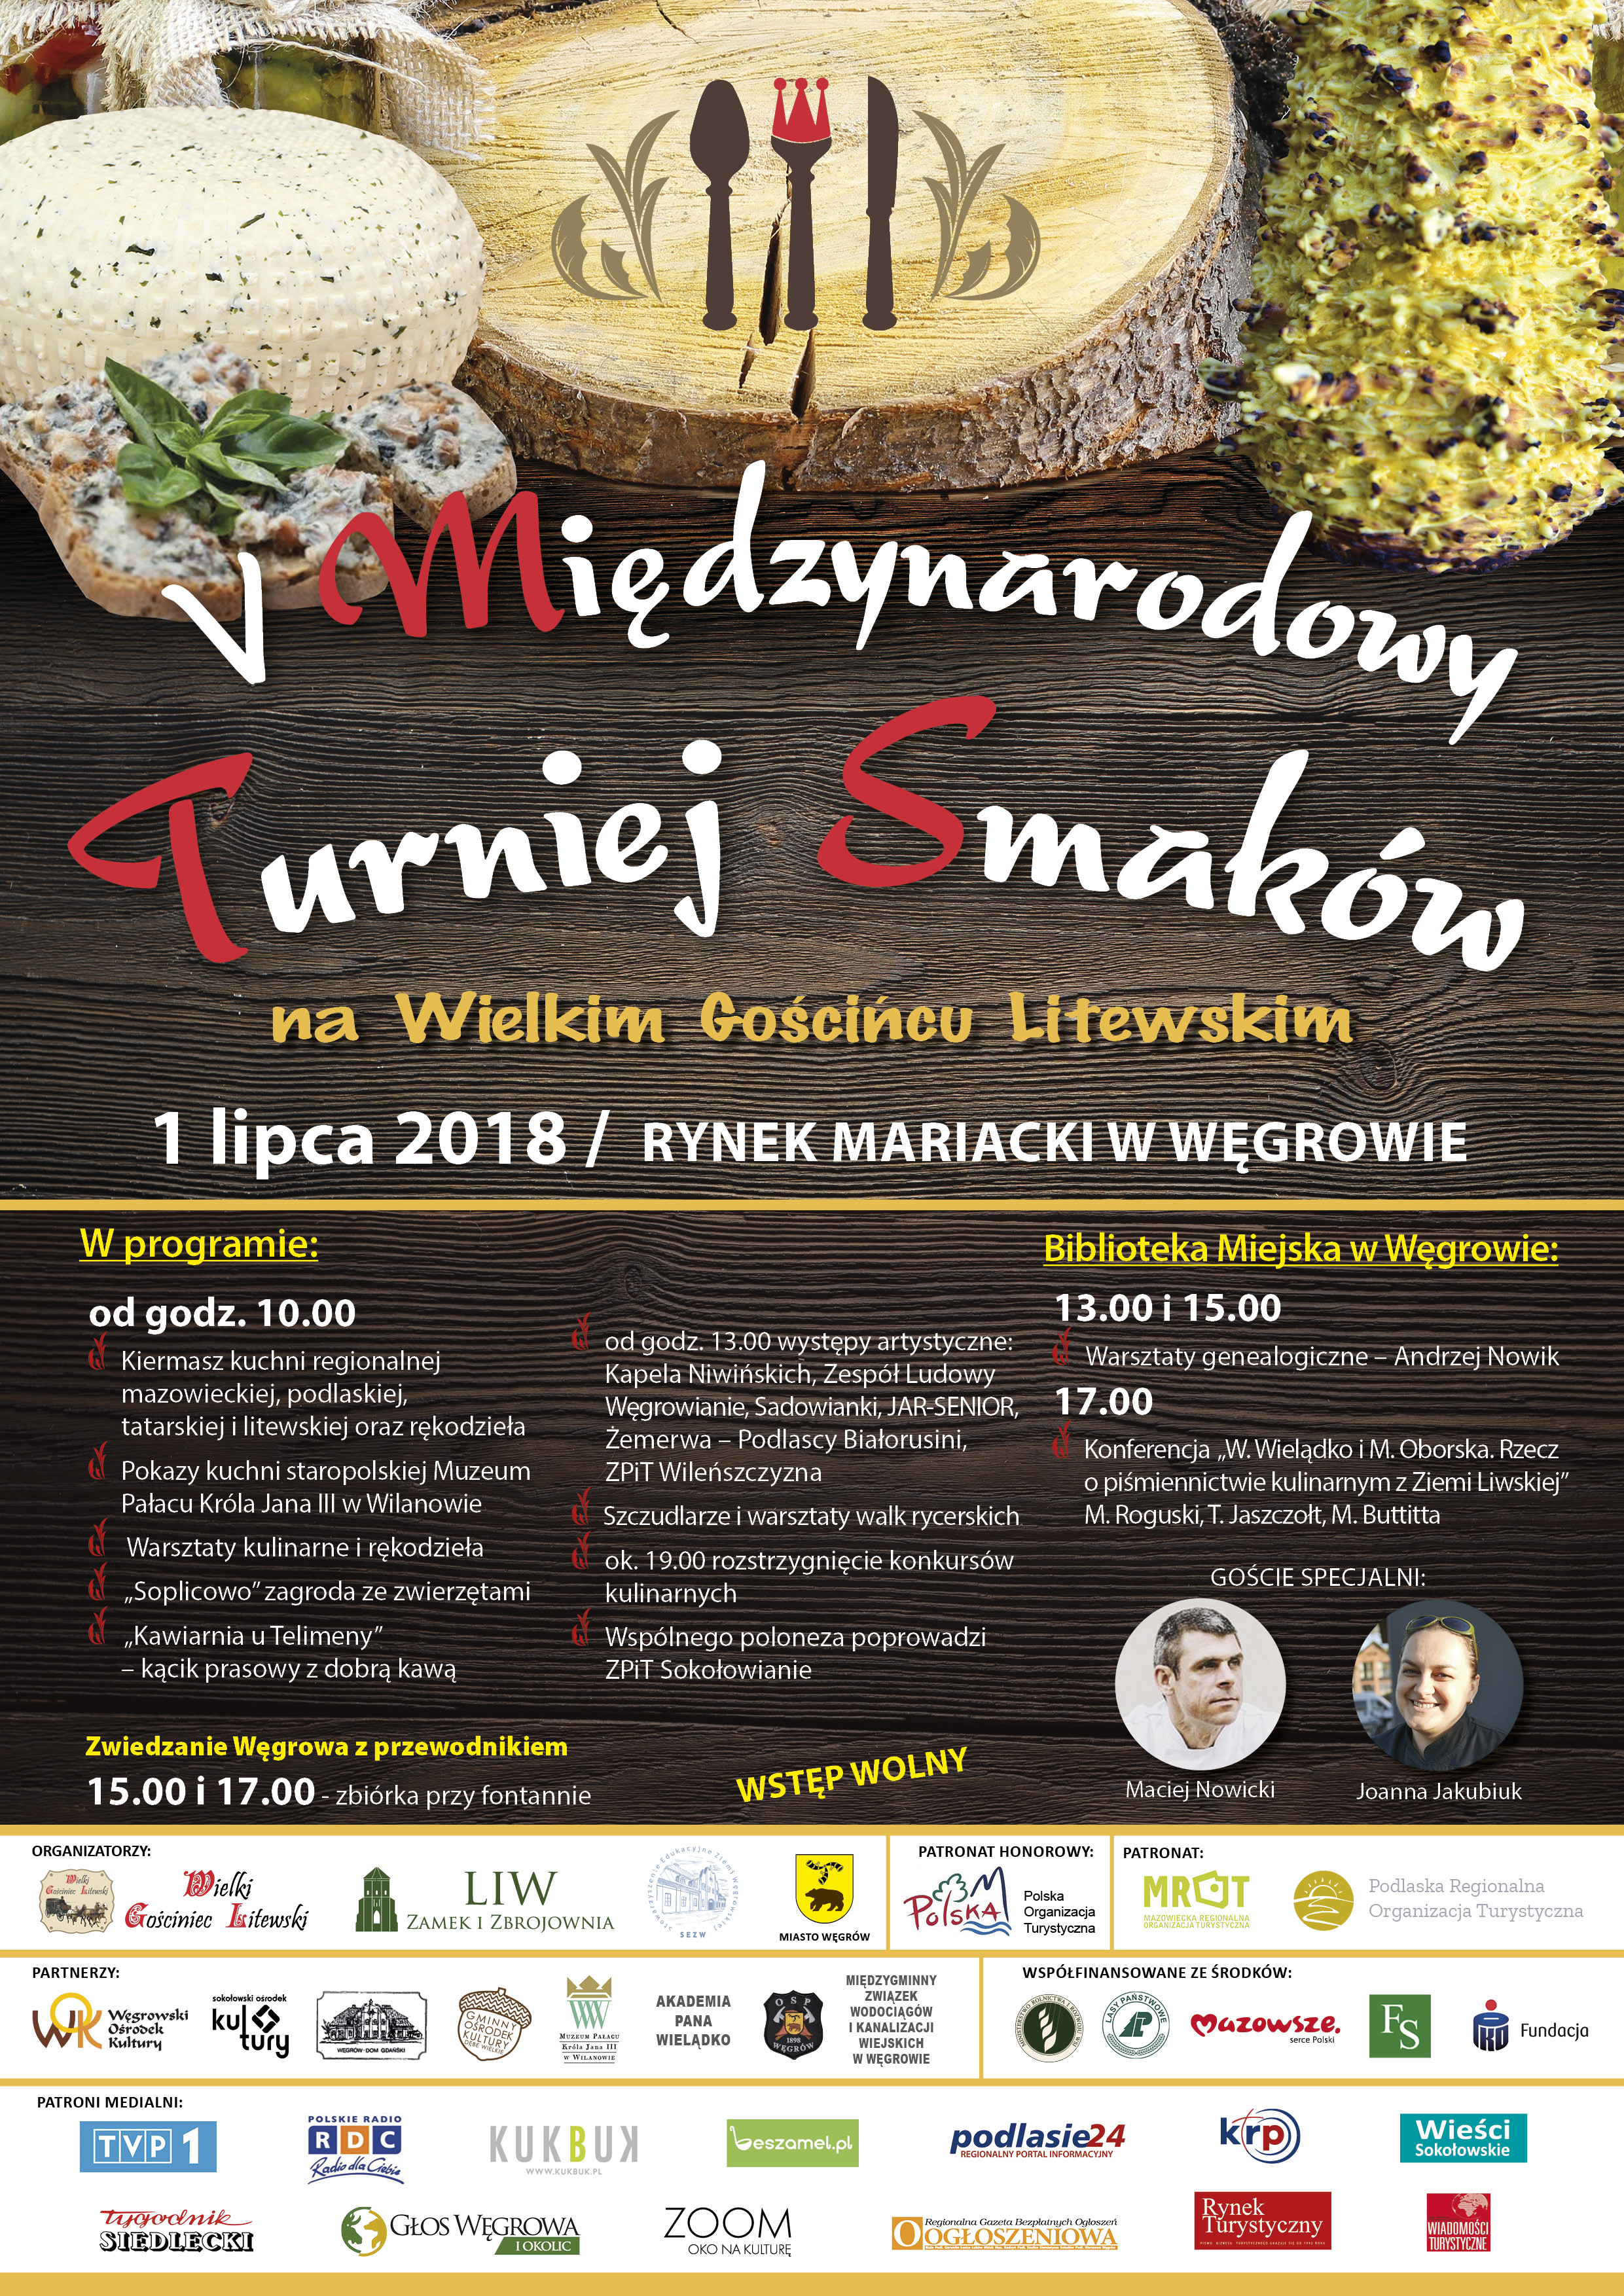 V Międzynarodowy Turniej Smaków na Wielkim Gościńcu Litewskim